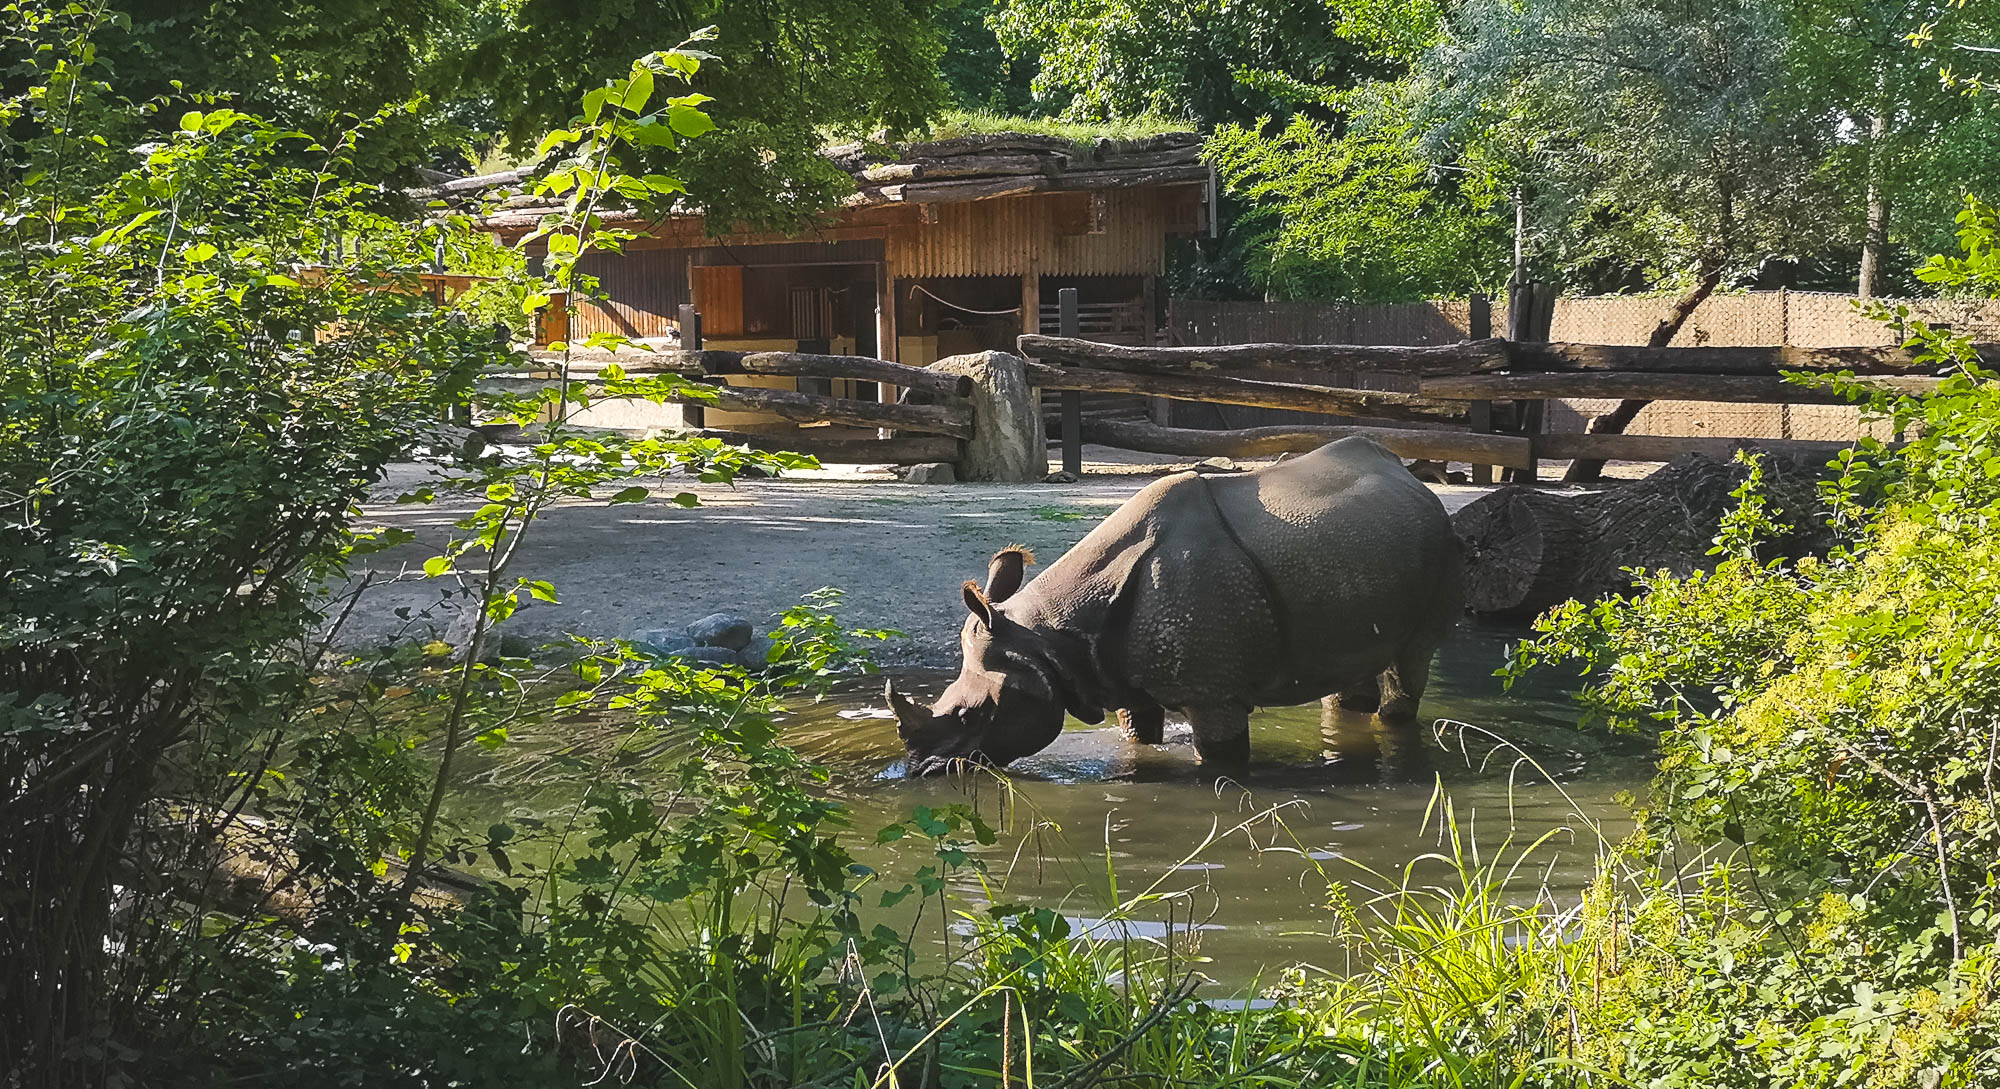 Rhinoceros in Schönbrunn Zoo, Vienna